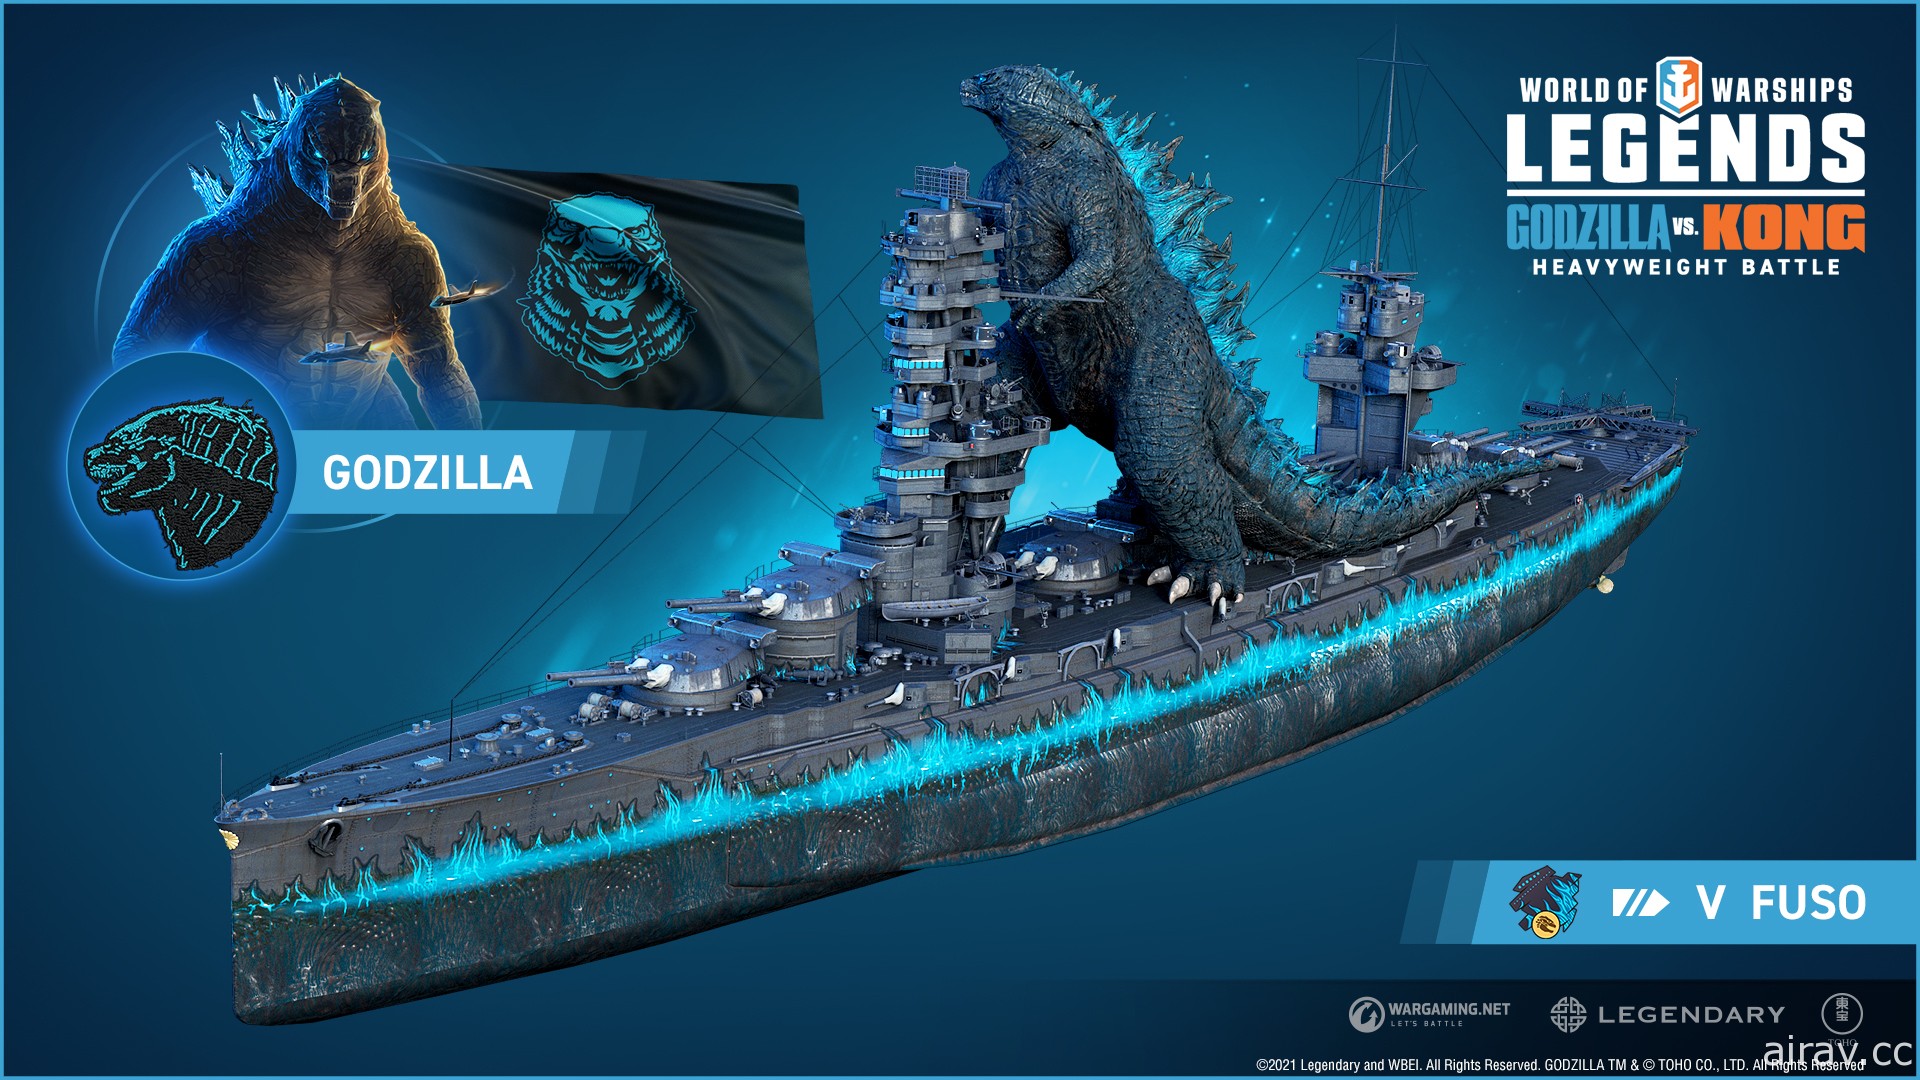 《哥吉拉大戰金剛》將降臨《戰艦世界》延續怪獸王座海上爭霸戰